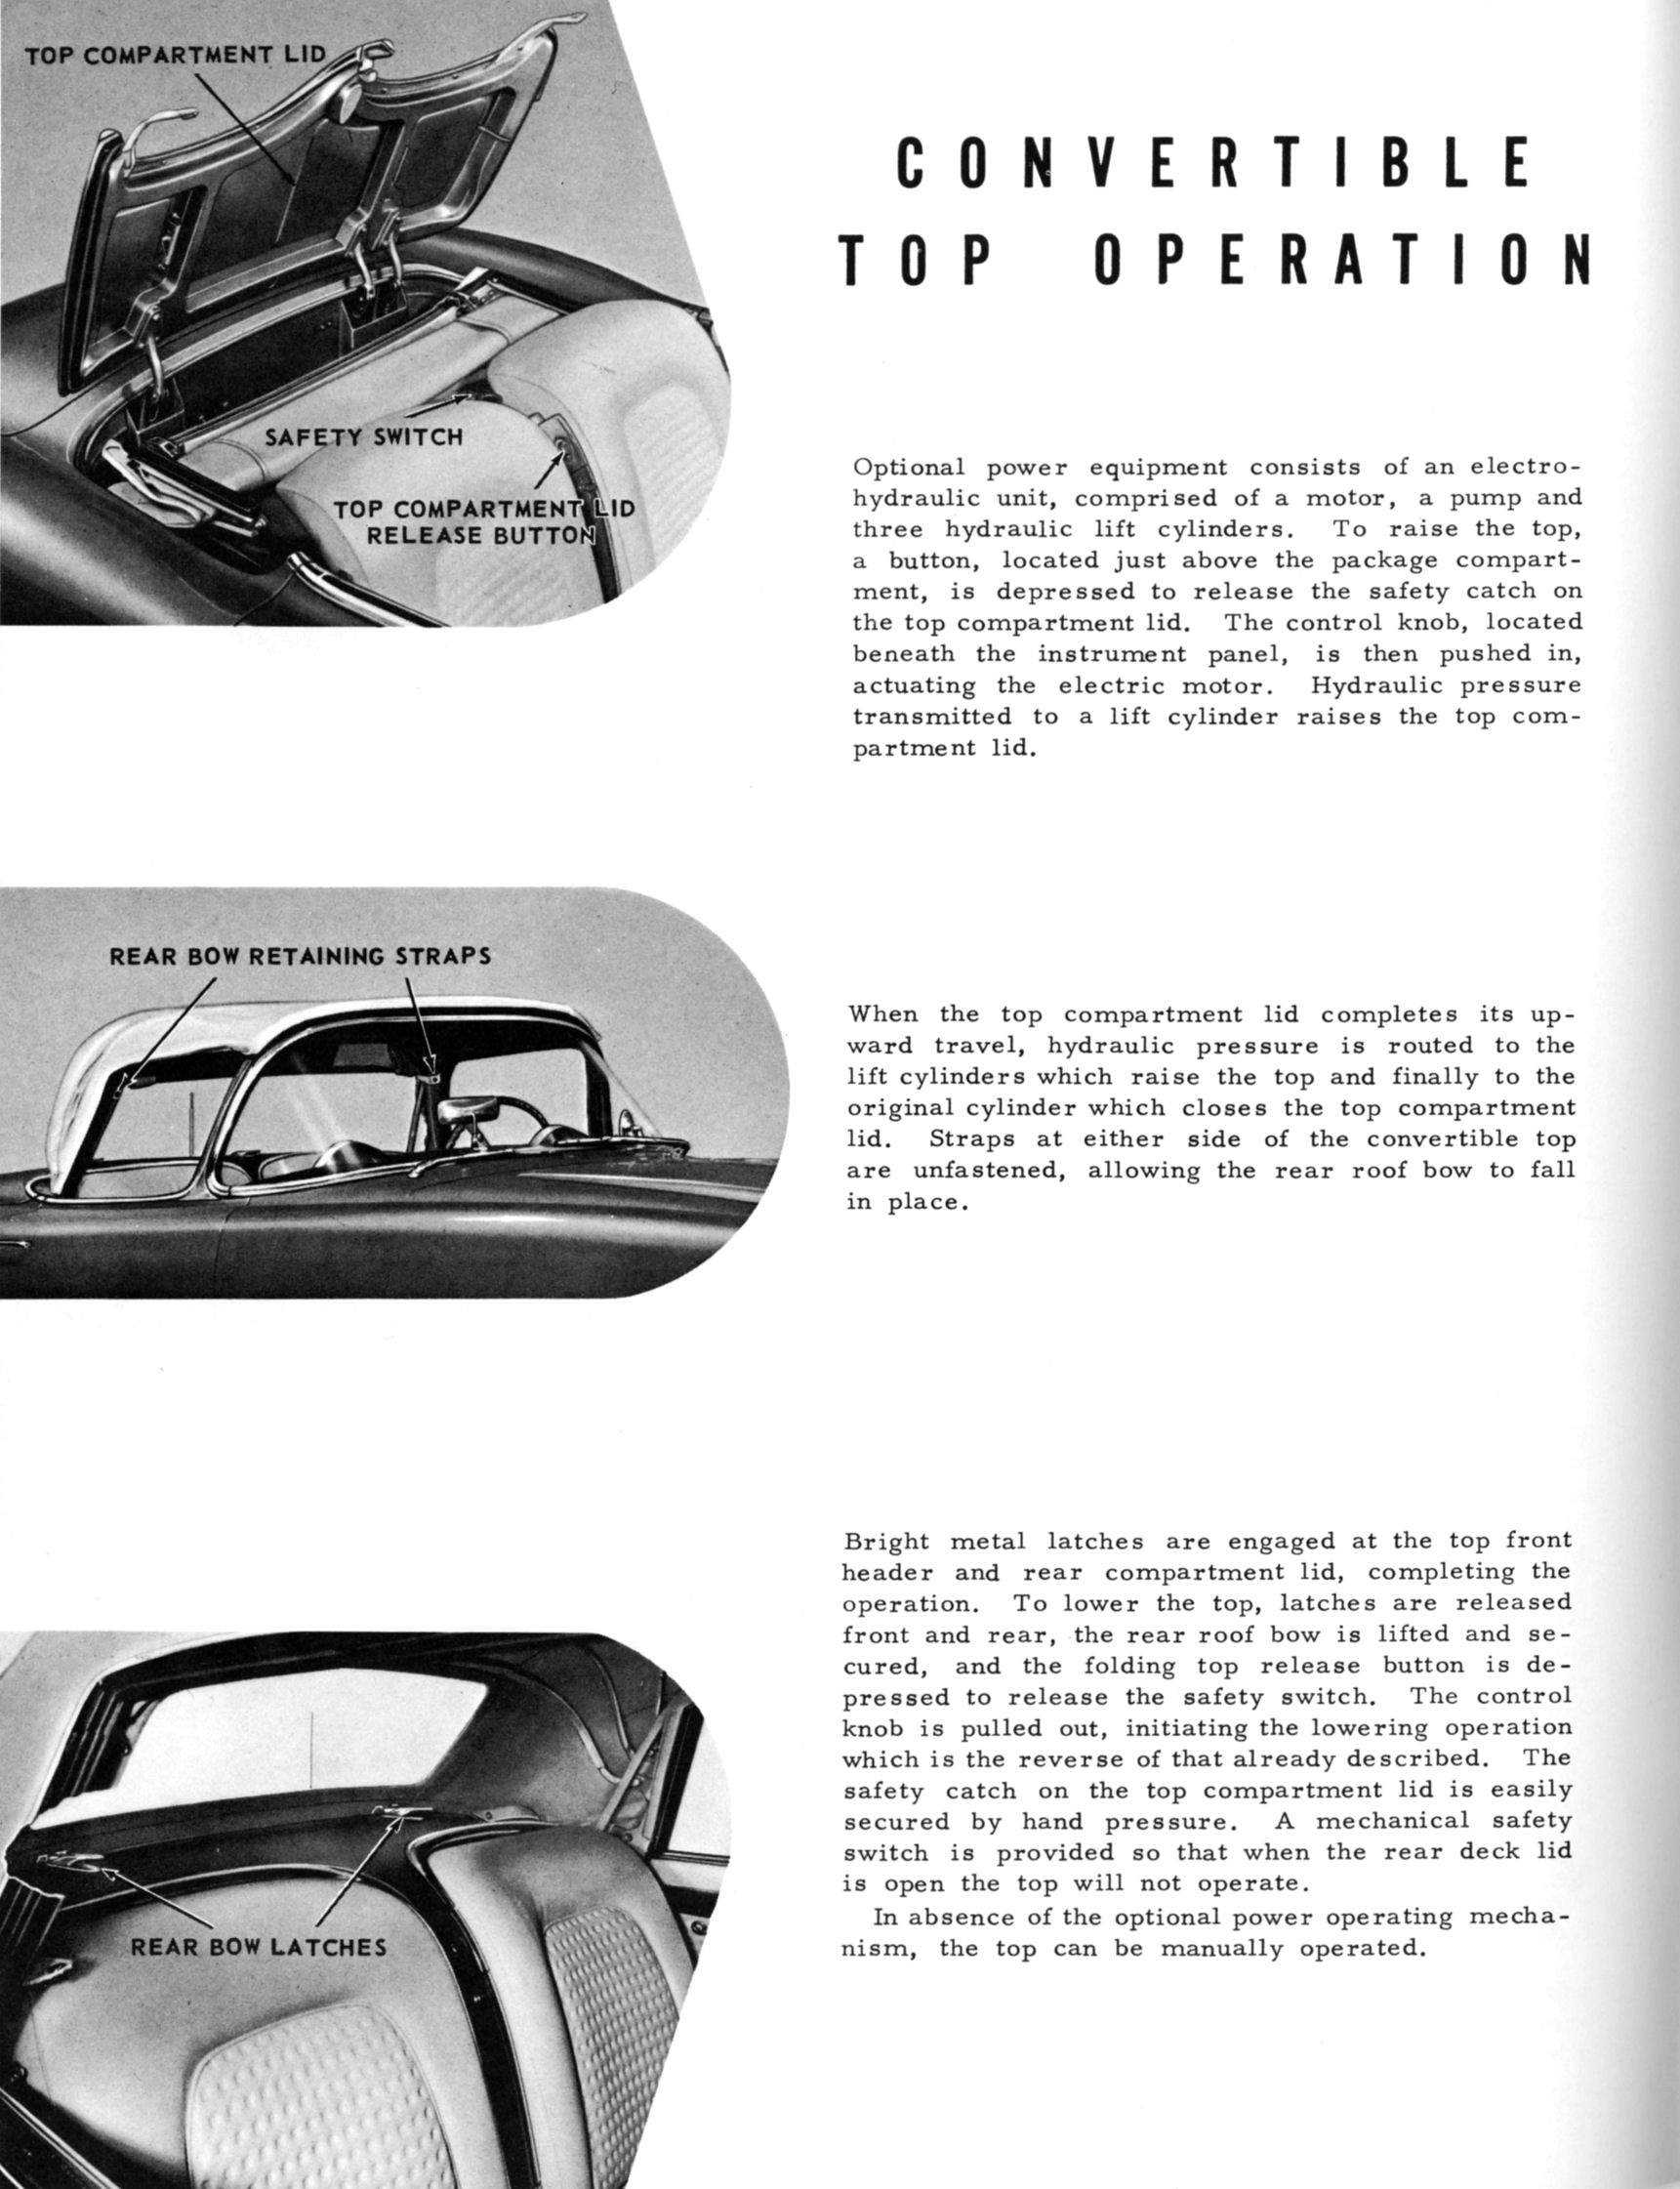 1956-57_Corvette_Engineering_Achievements_Page_08